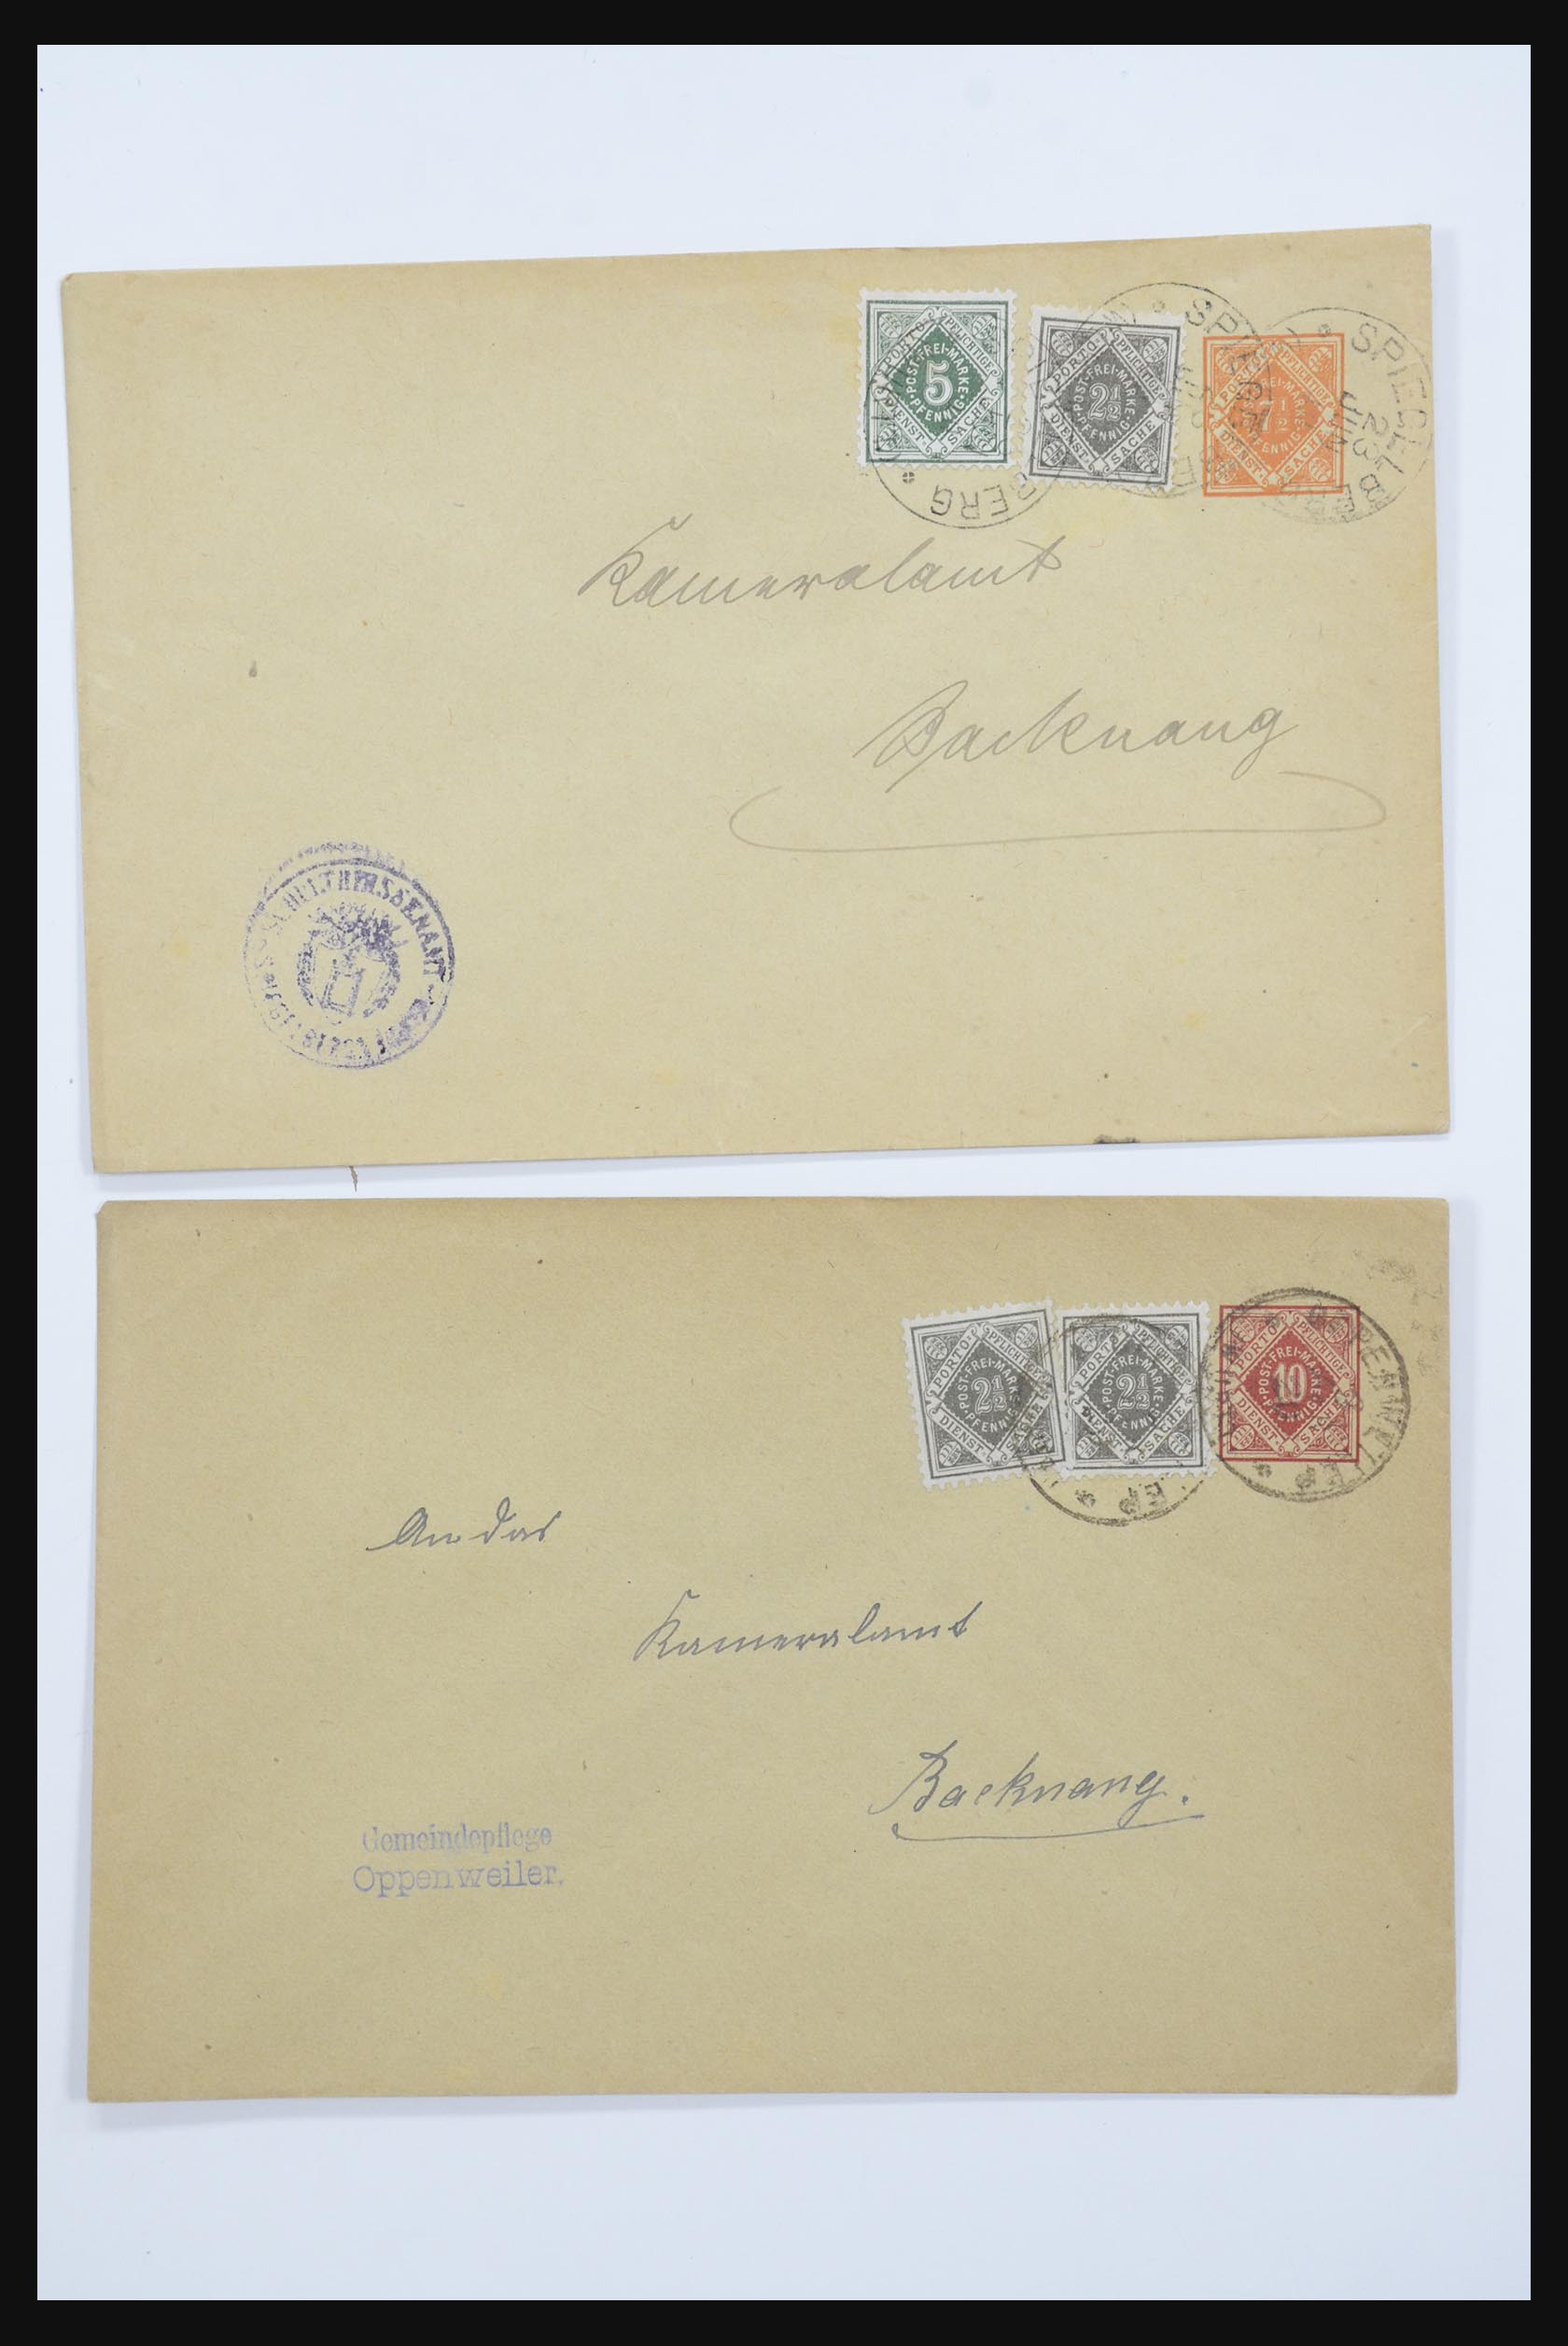 31952 045 - 31952 German Reich cards.